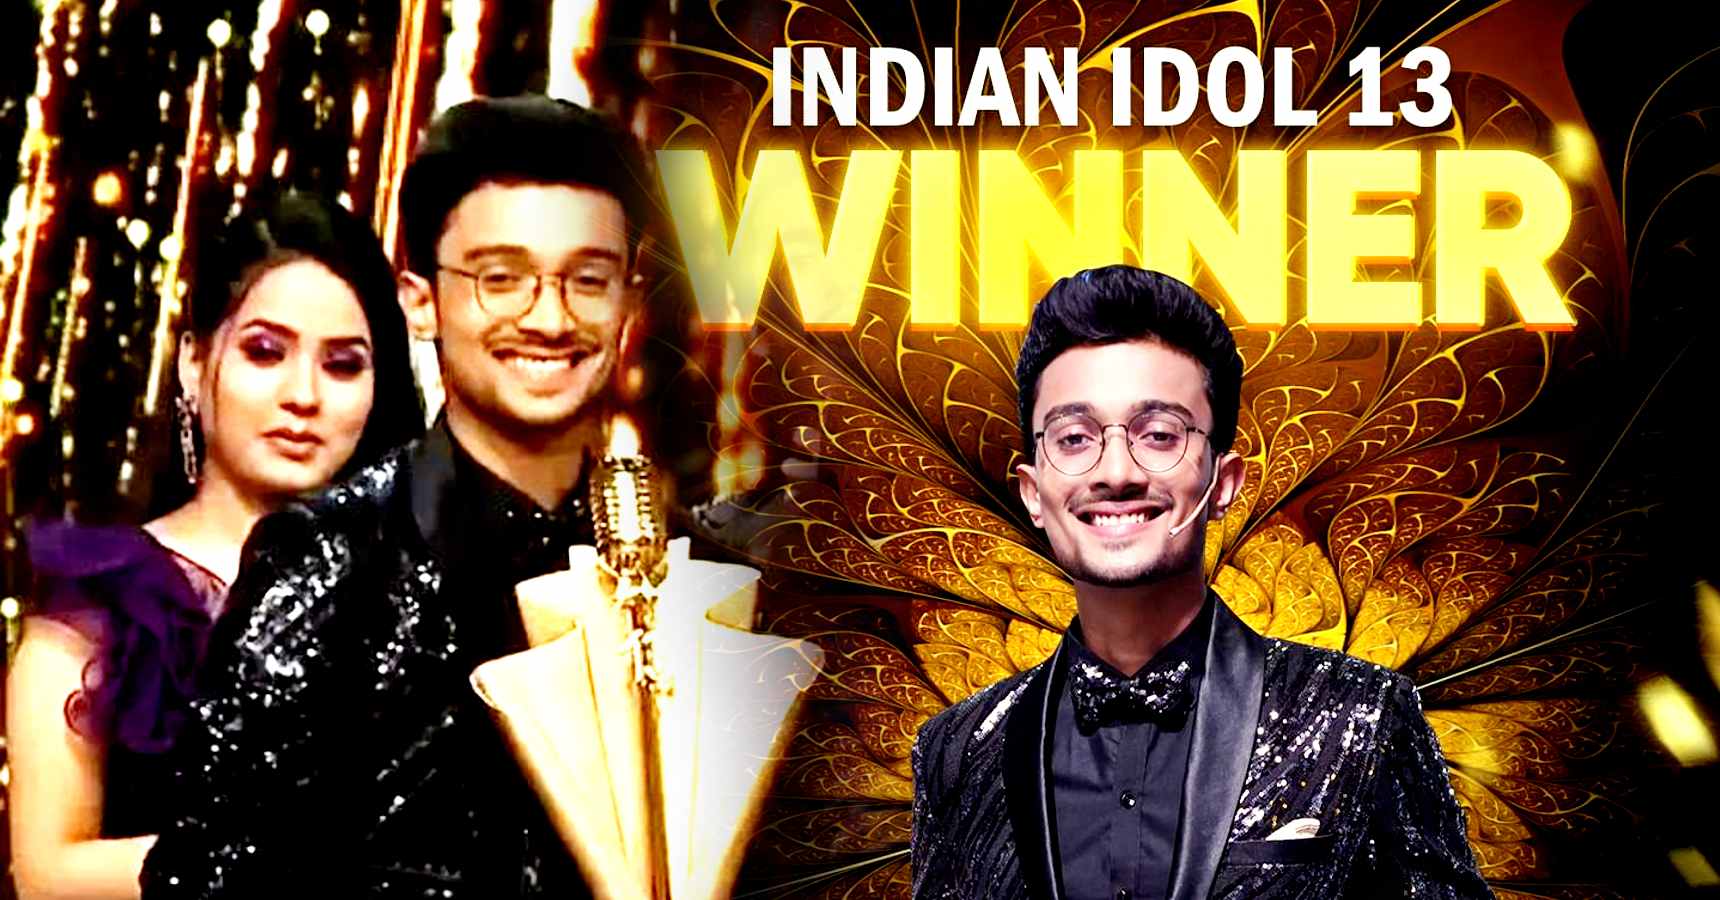 ইন্ডিয়ান আইডল,Indian Idol,গানের প্রতিযোগিতা,Music Competition,গ্রান্ড ফিনালে,Grand Finale,বিজয়ী,Winner,ঋষি সিং,Rishi Singh,দেবস্মিতা রায়,Deboshmita Roy,বাংলা,Bengal,Indian Idol 13,Indian Idol Winner,Indian Idol Winner Rishi Singh